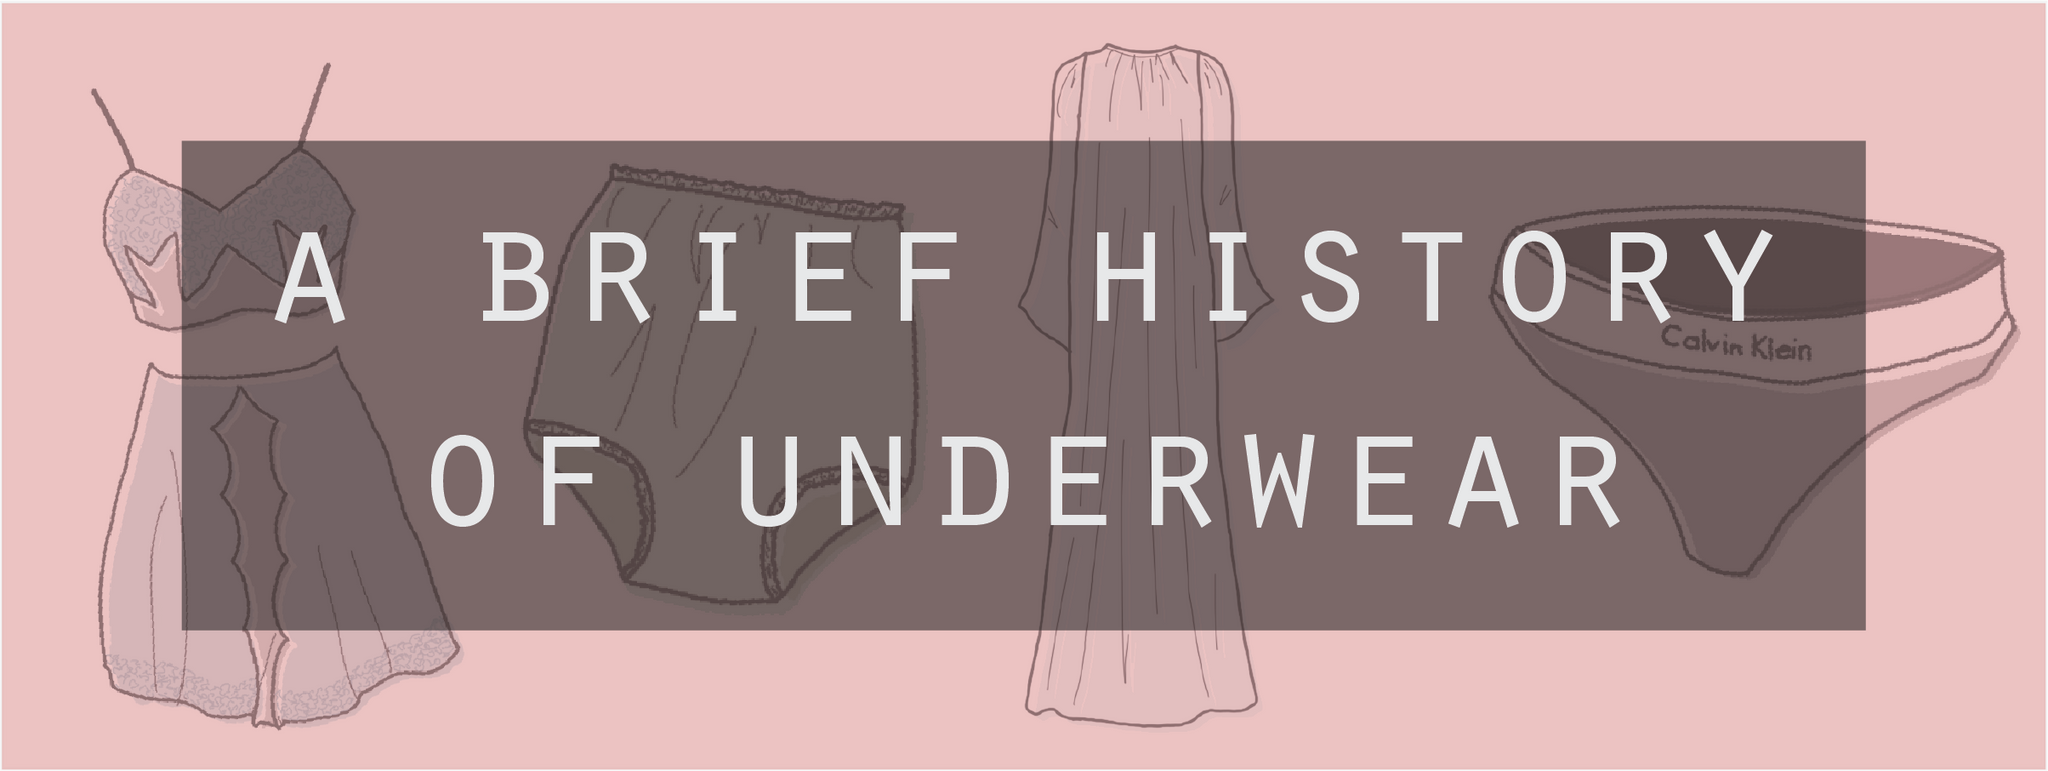 A Brief History of Underwear  Thong? Shorts? Briefs? - Kade & Vos